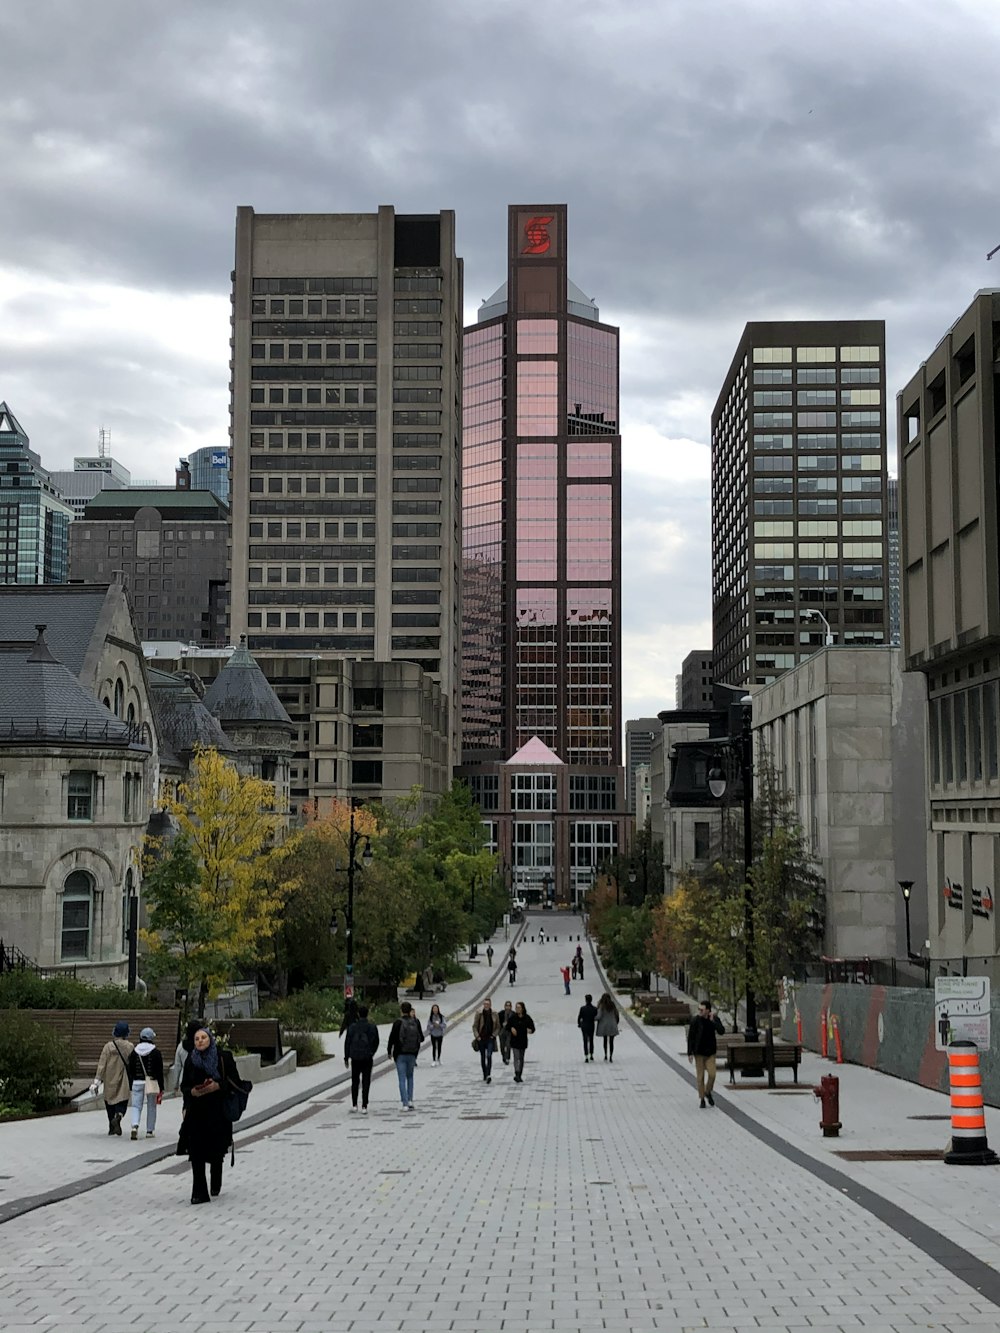 people walking on pedestrian lane near high rise buildings during daytime